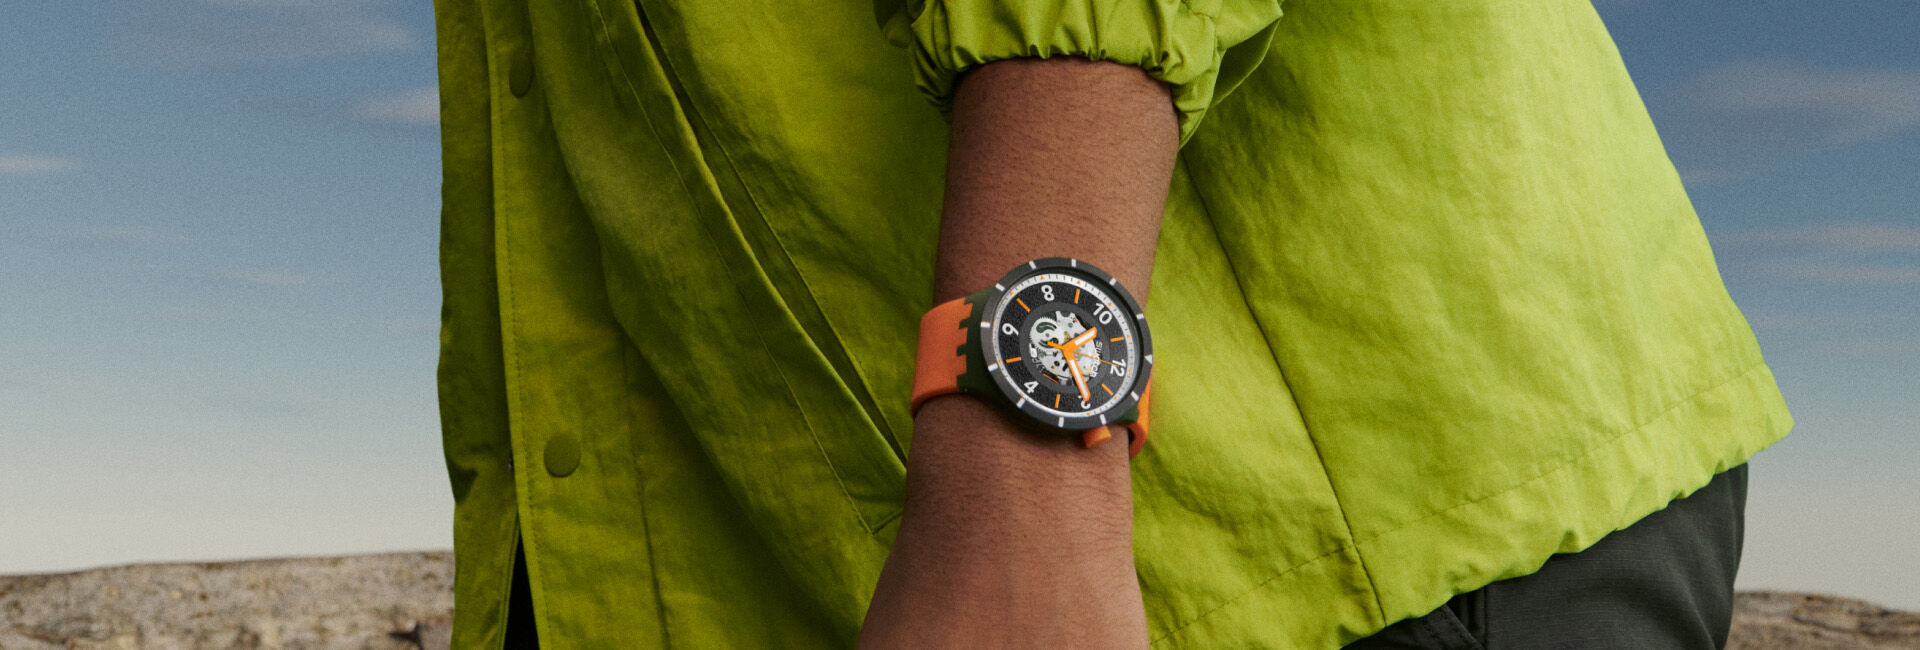 ウォッチ (腕時計) : BIG BOLD | Swatch® 日本